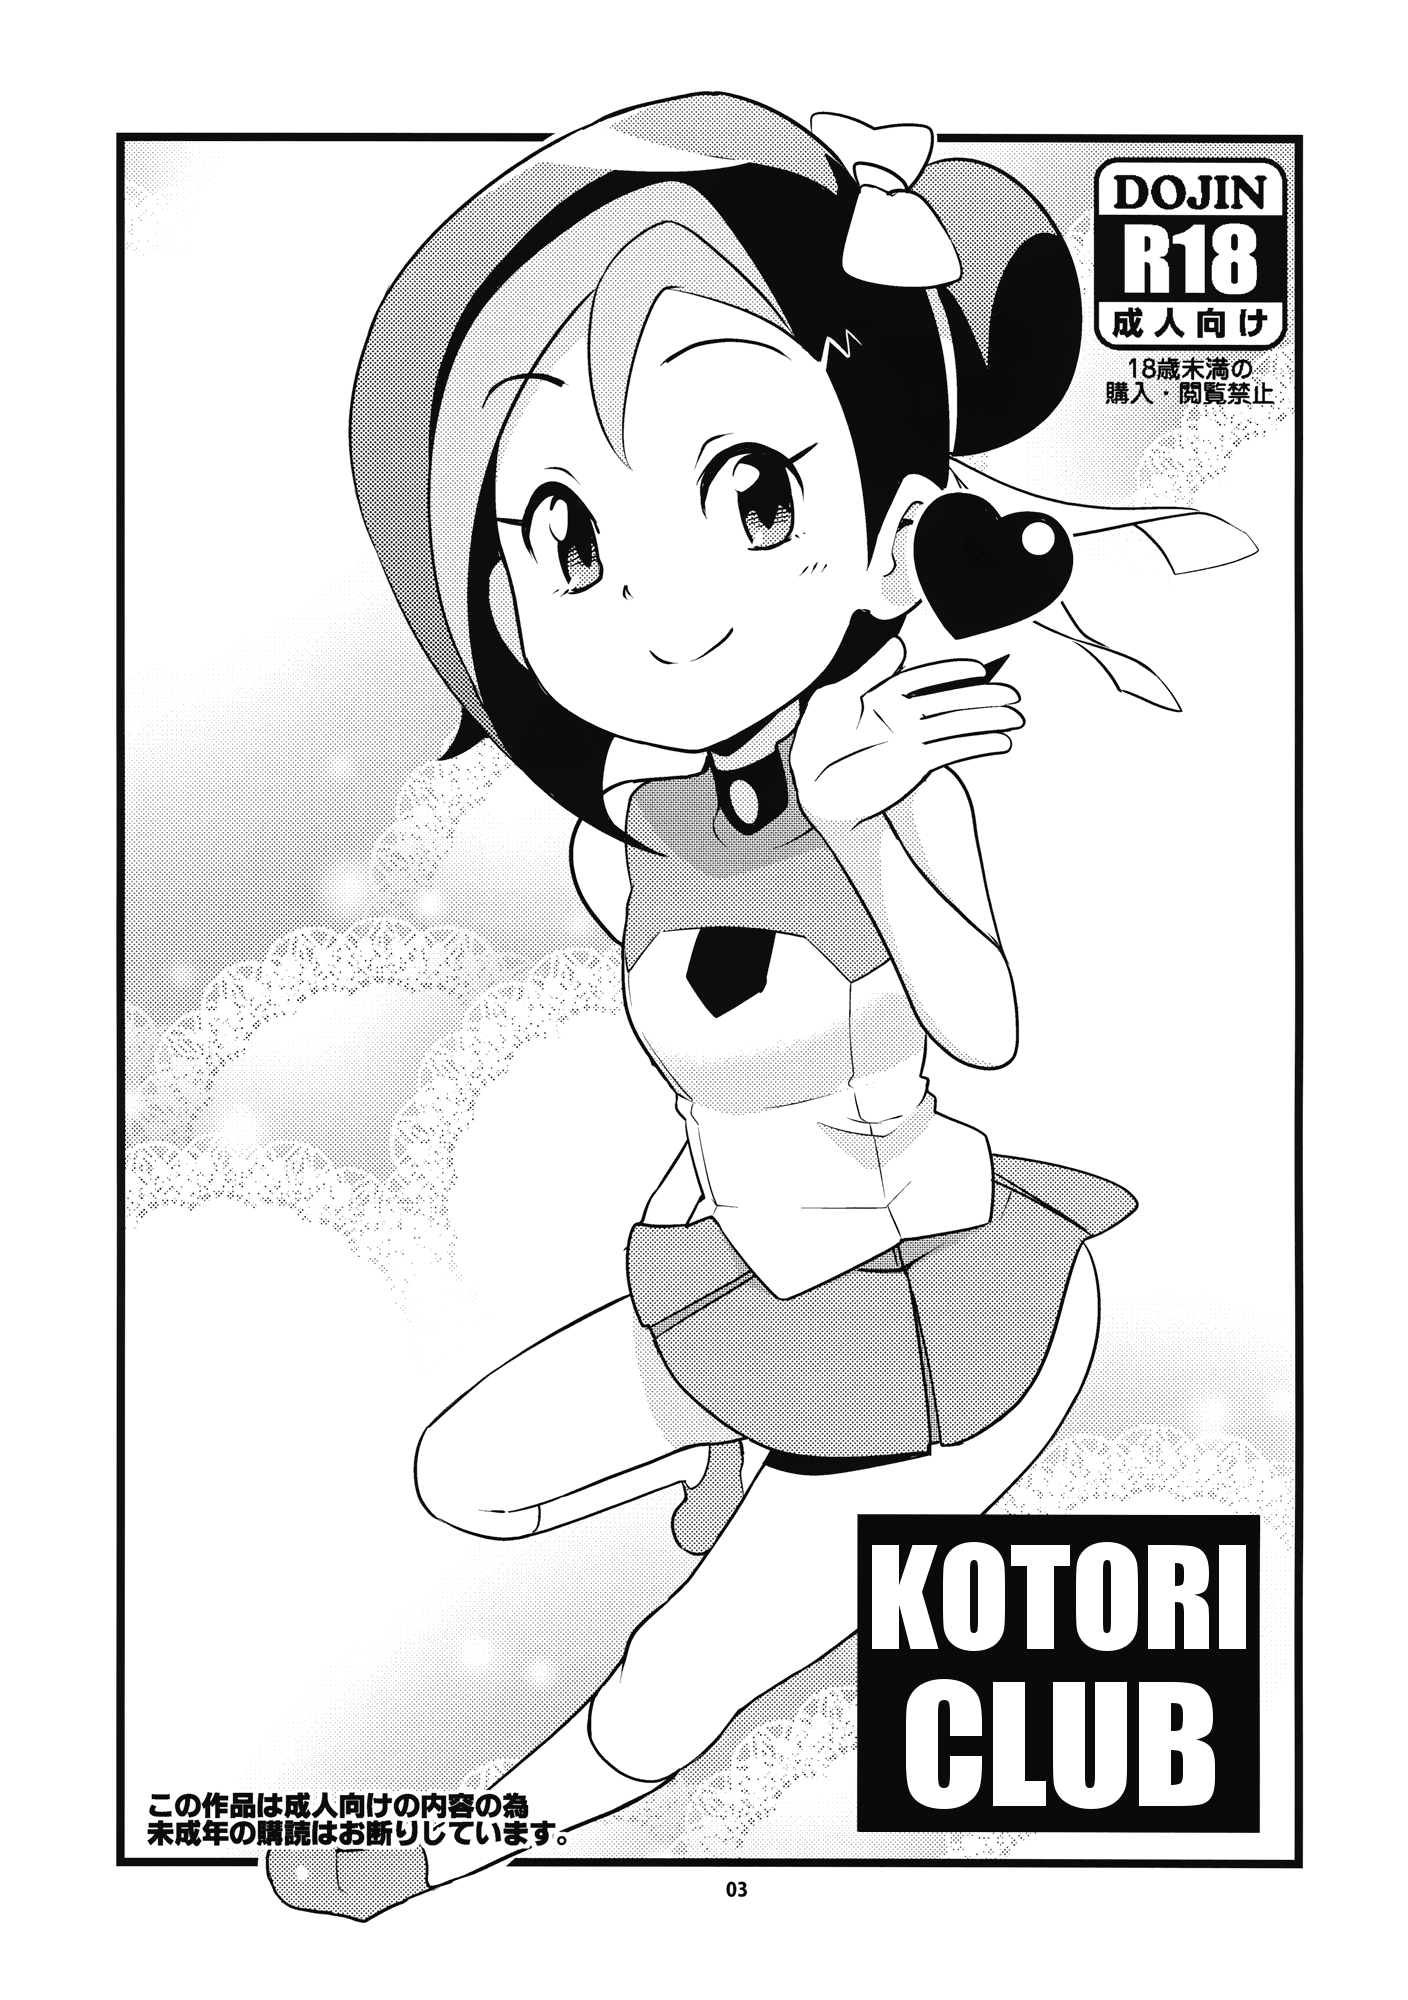 Kotori Club hentai manga picture 3